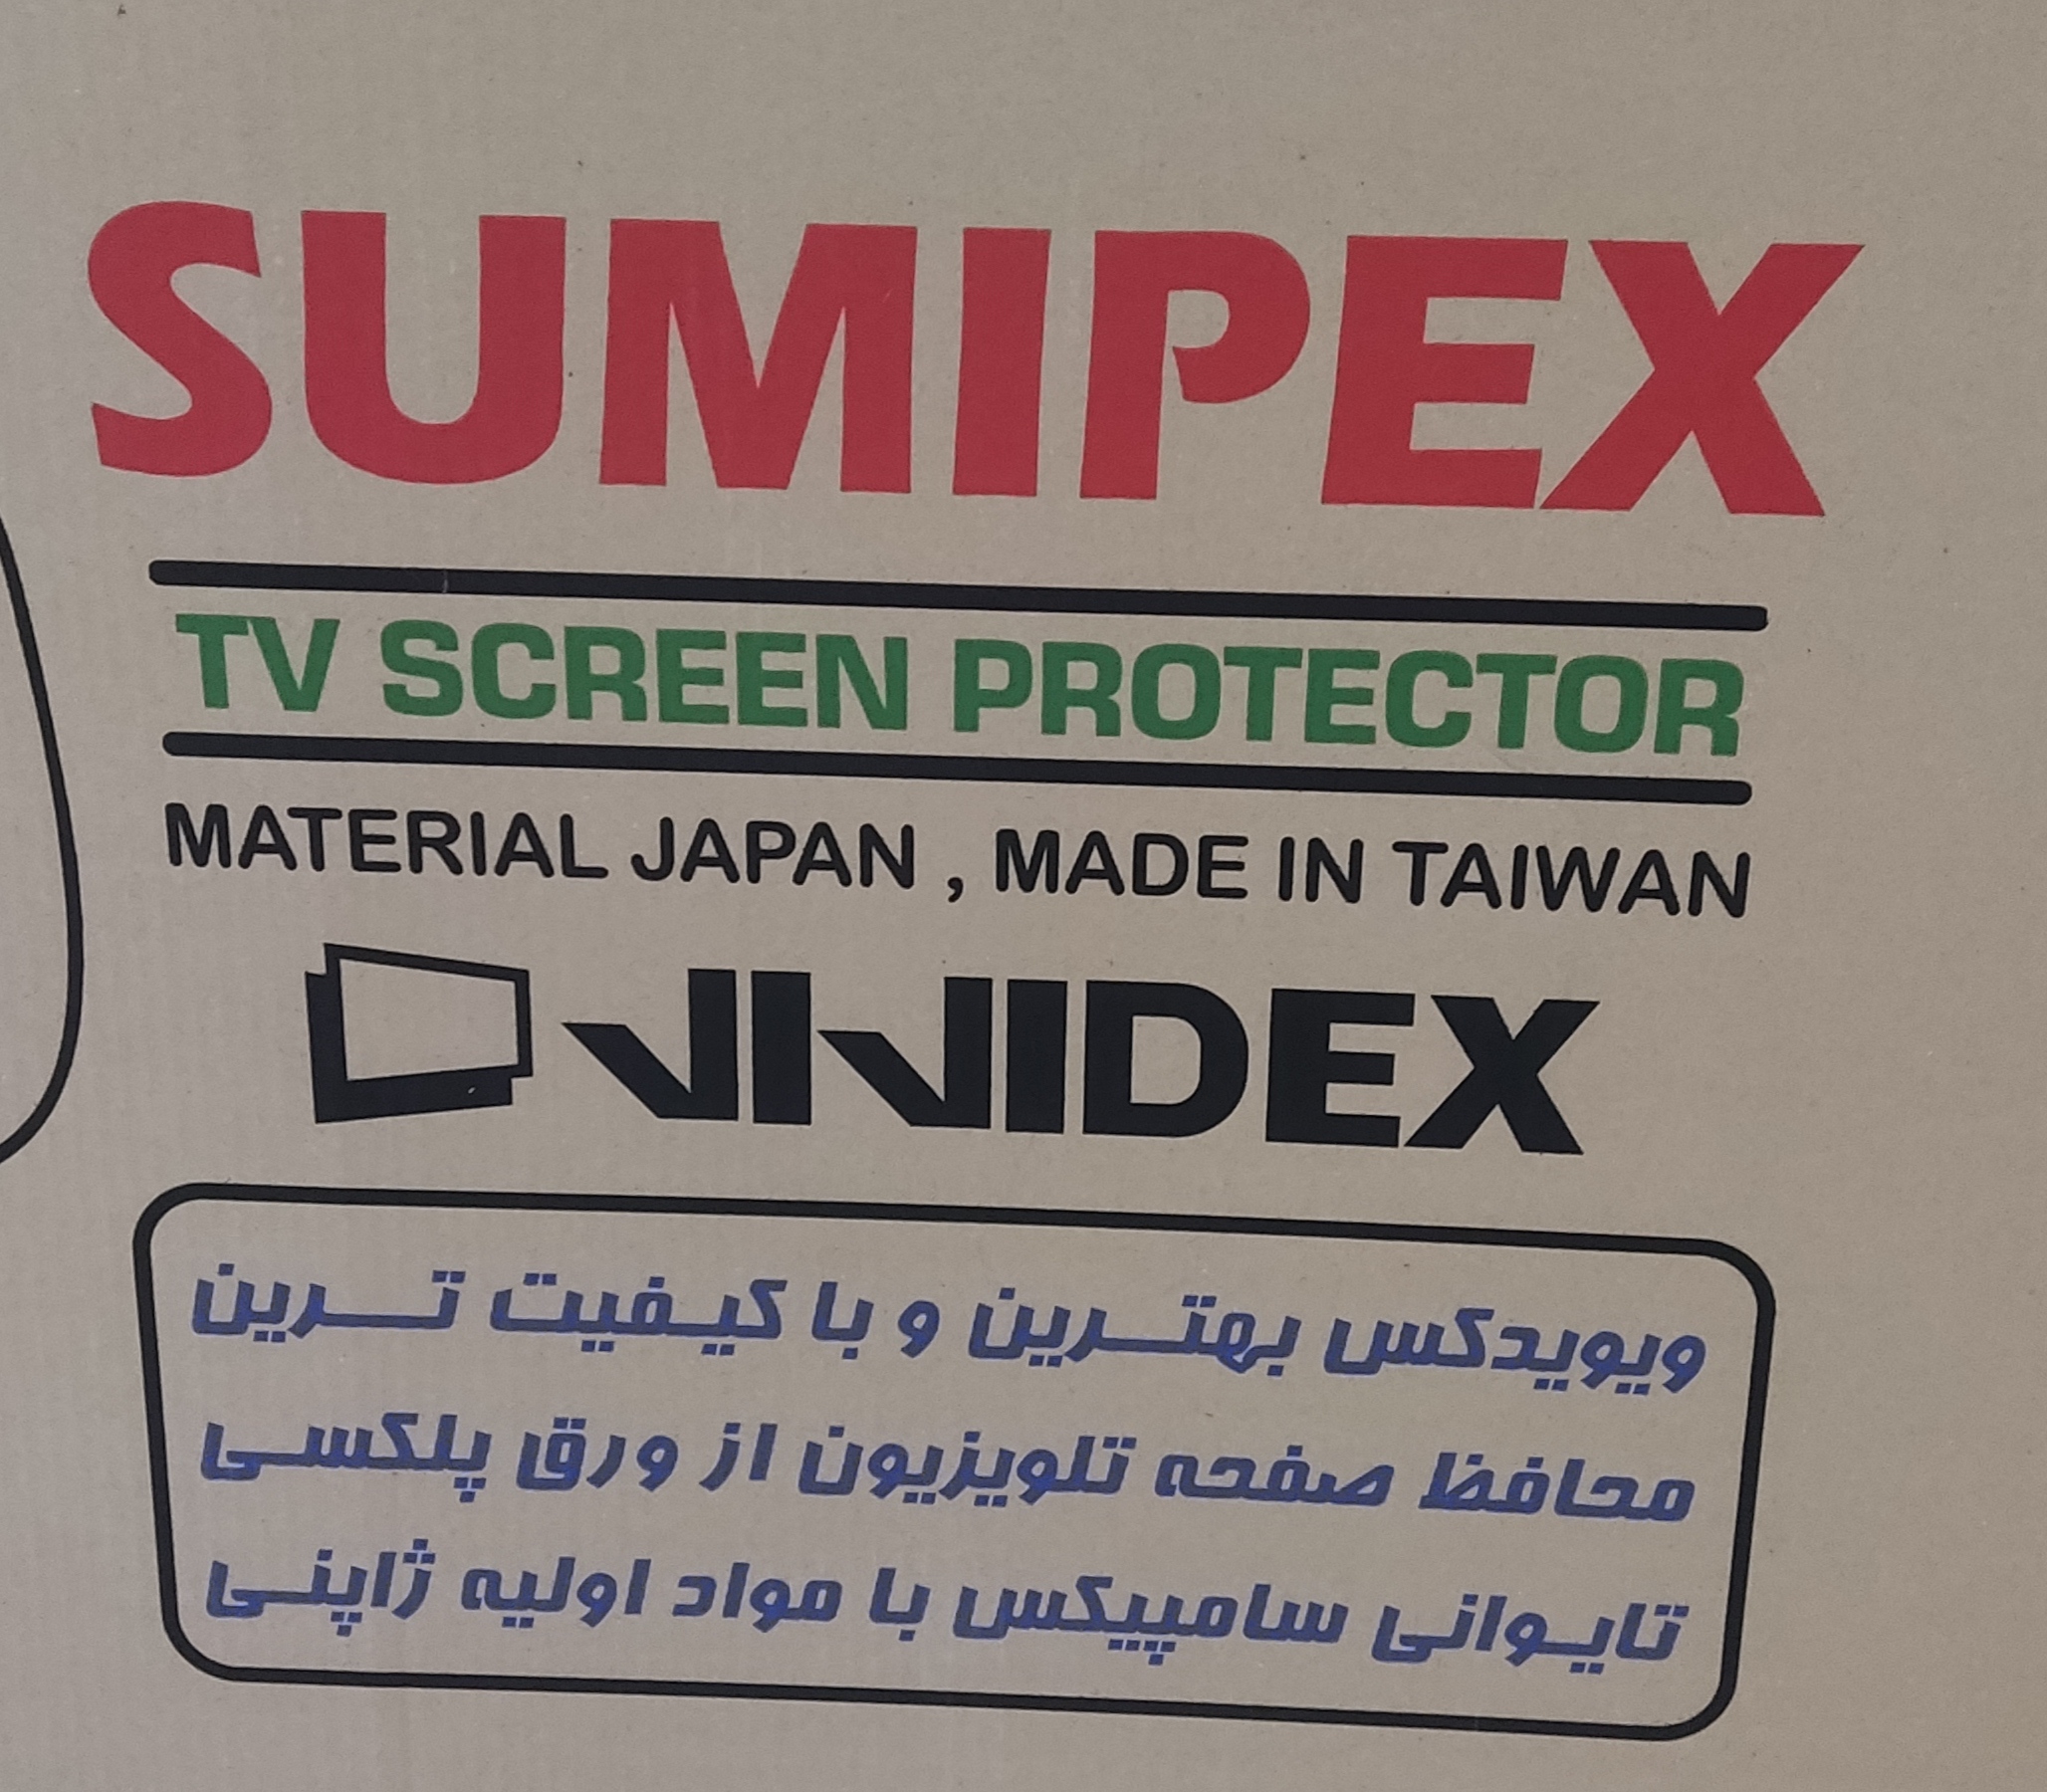 محافظ صفحه تلویزیون ۷۵ اینچ  sumipex تایوان